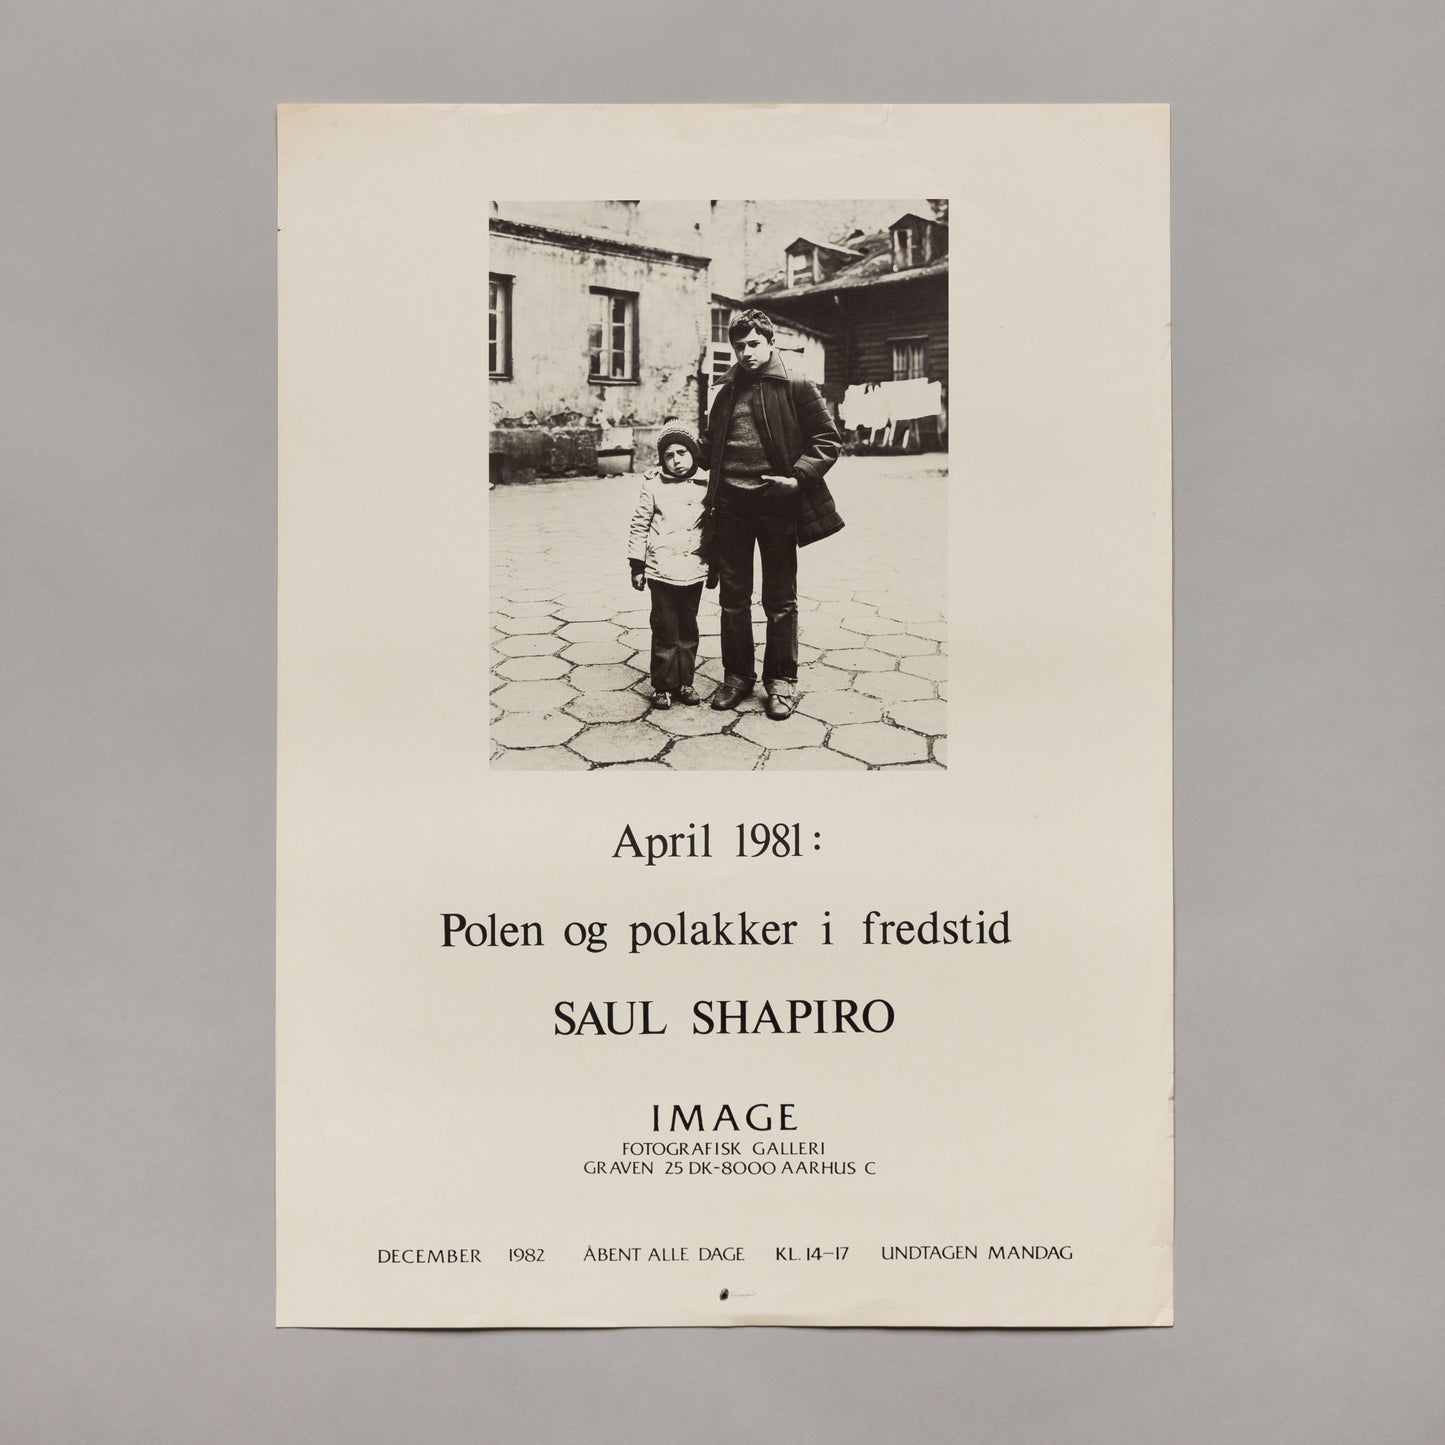 Saul Shapiro, Polen og polakker i fredstid, 1981 — poster